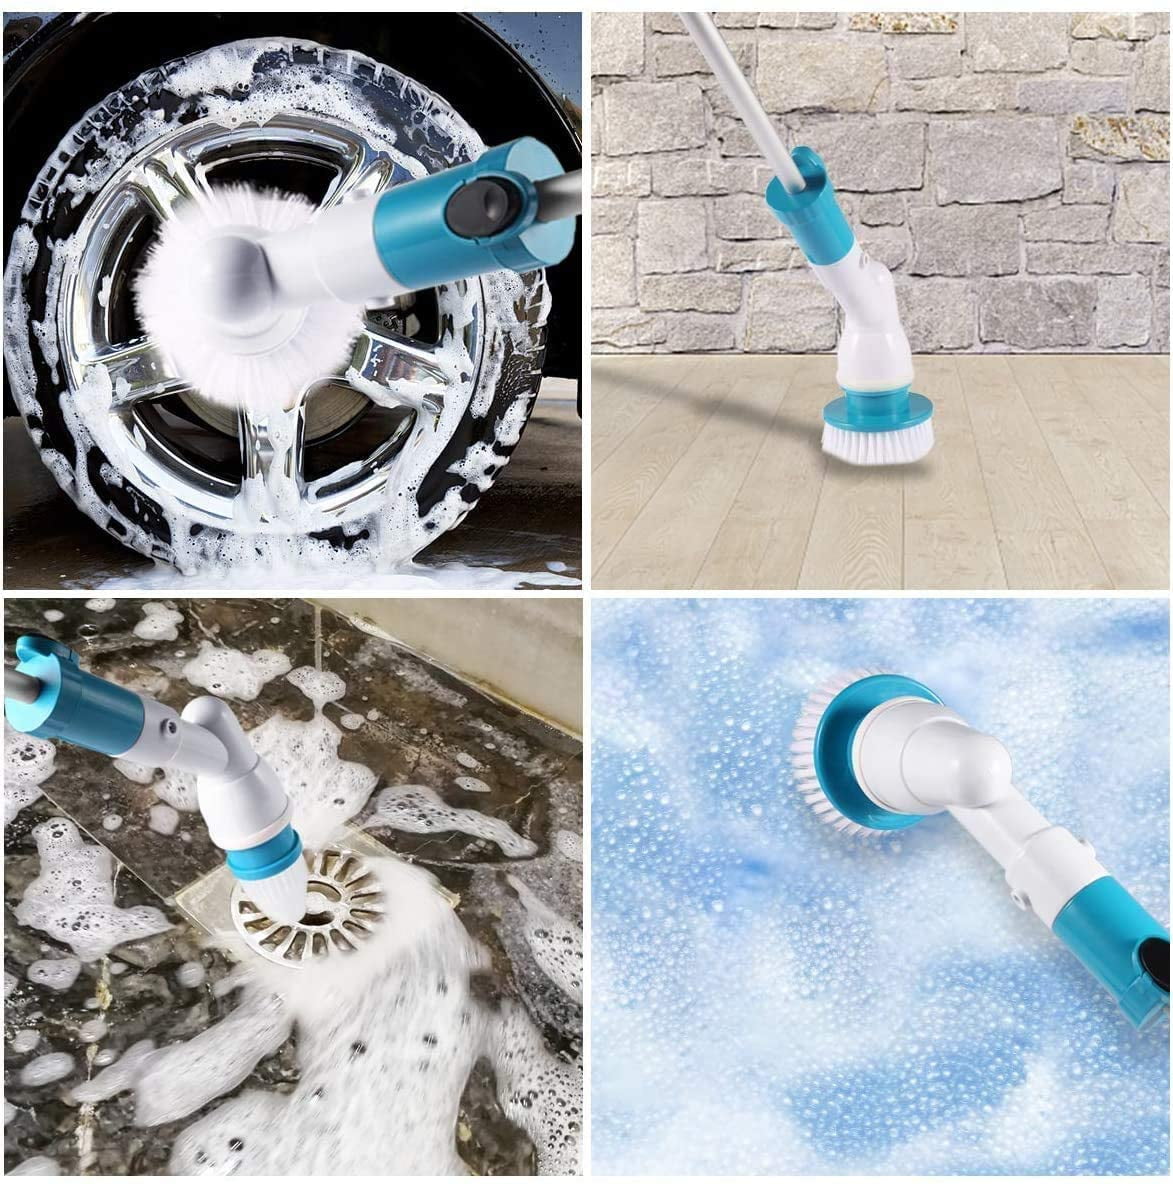 Yrmaups Multi-Function Electric Spin Scrub-BER Washing Brushes